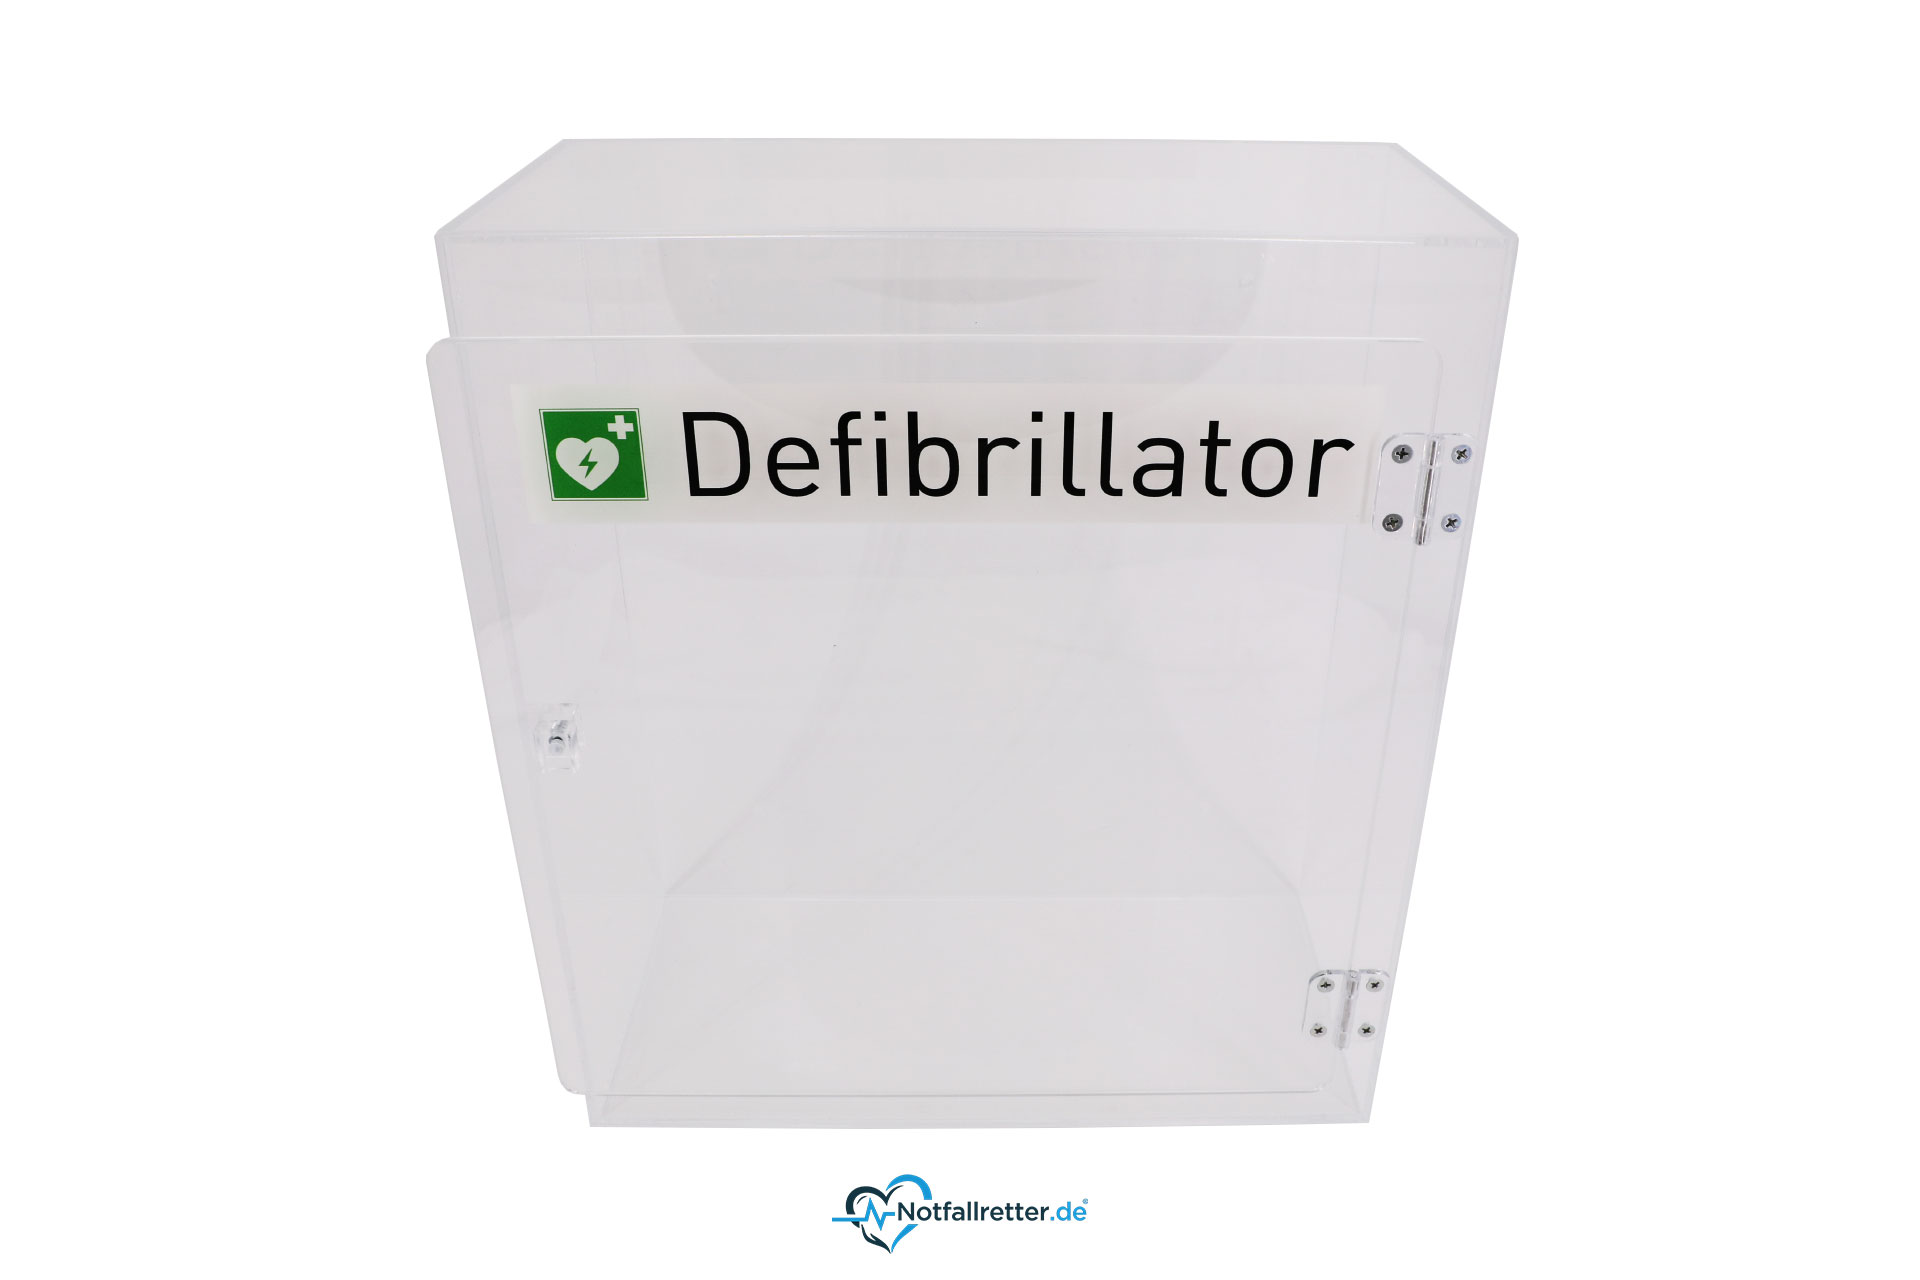 Design-Acrylglaswandkasten für Defibrillator AED